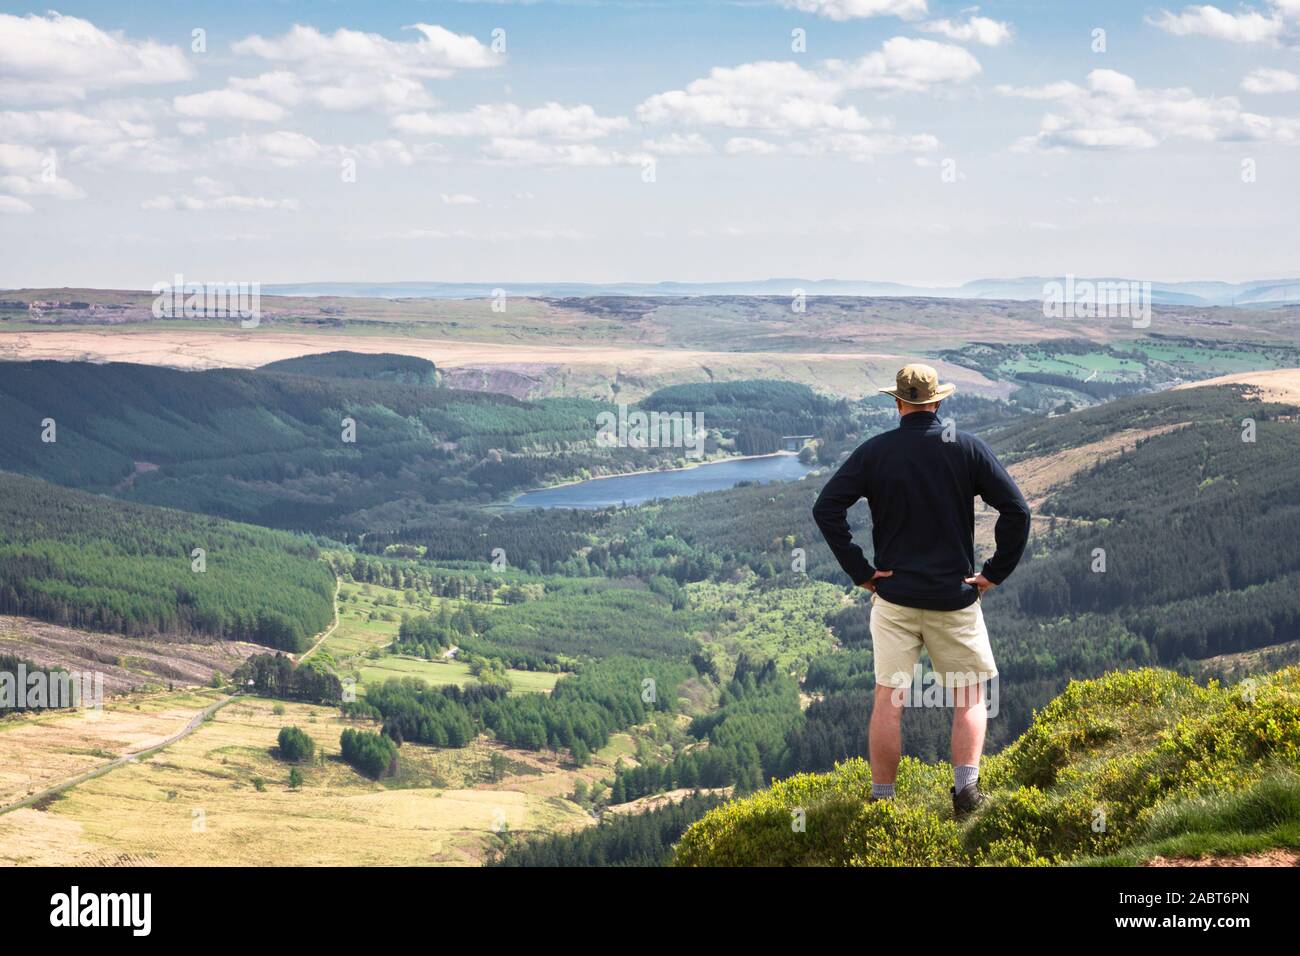 Mann, der auf einem Hügel bei einem Tal auf den Horizont schauen. Mai Konzept der Leistung oder der Erfolg zeigen. Pen Y Fan, Brecon Beacons, Wales, Großbritannien Stockfoto